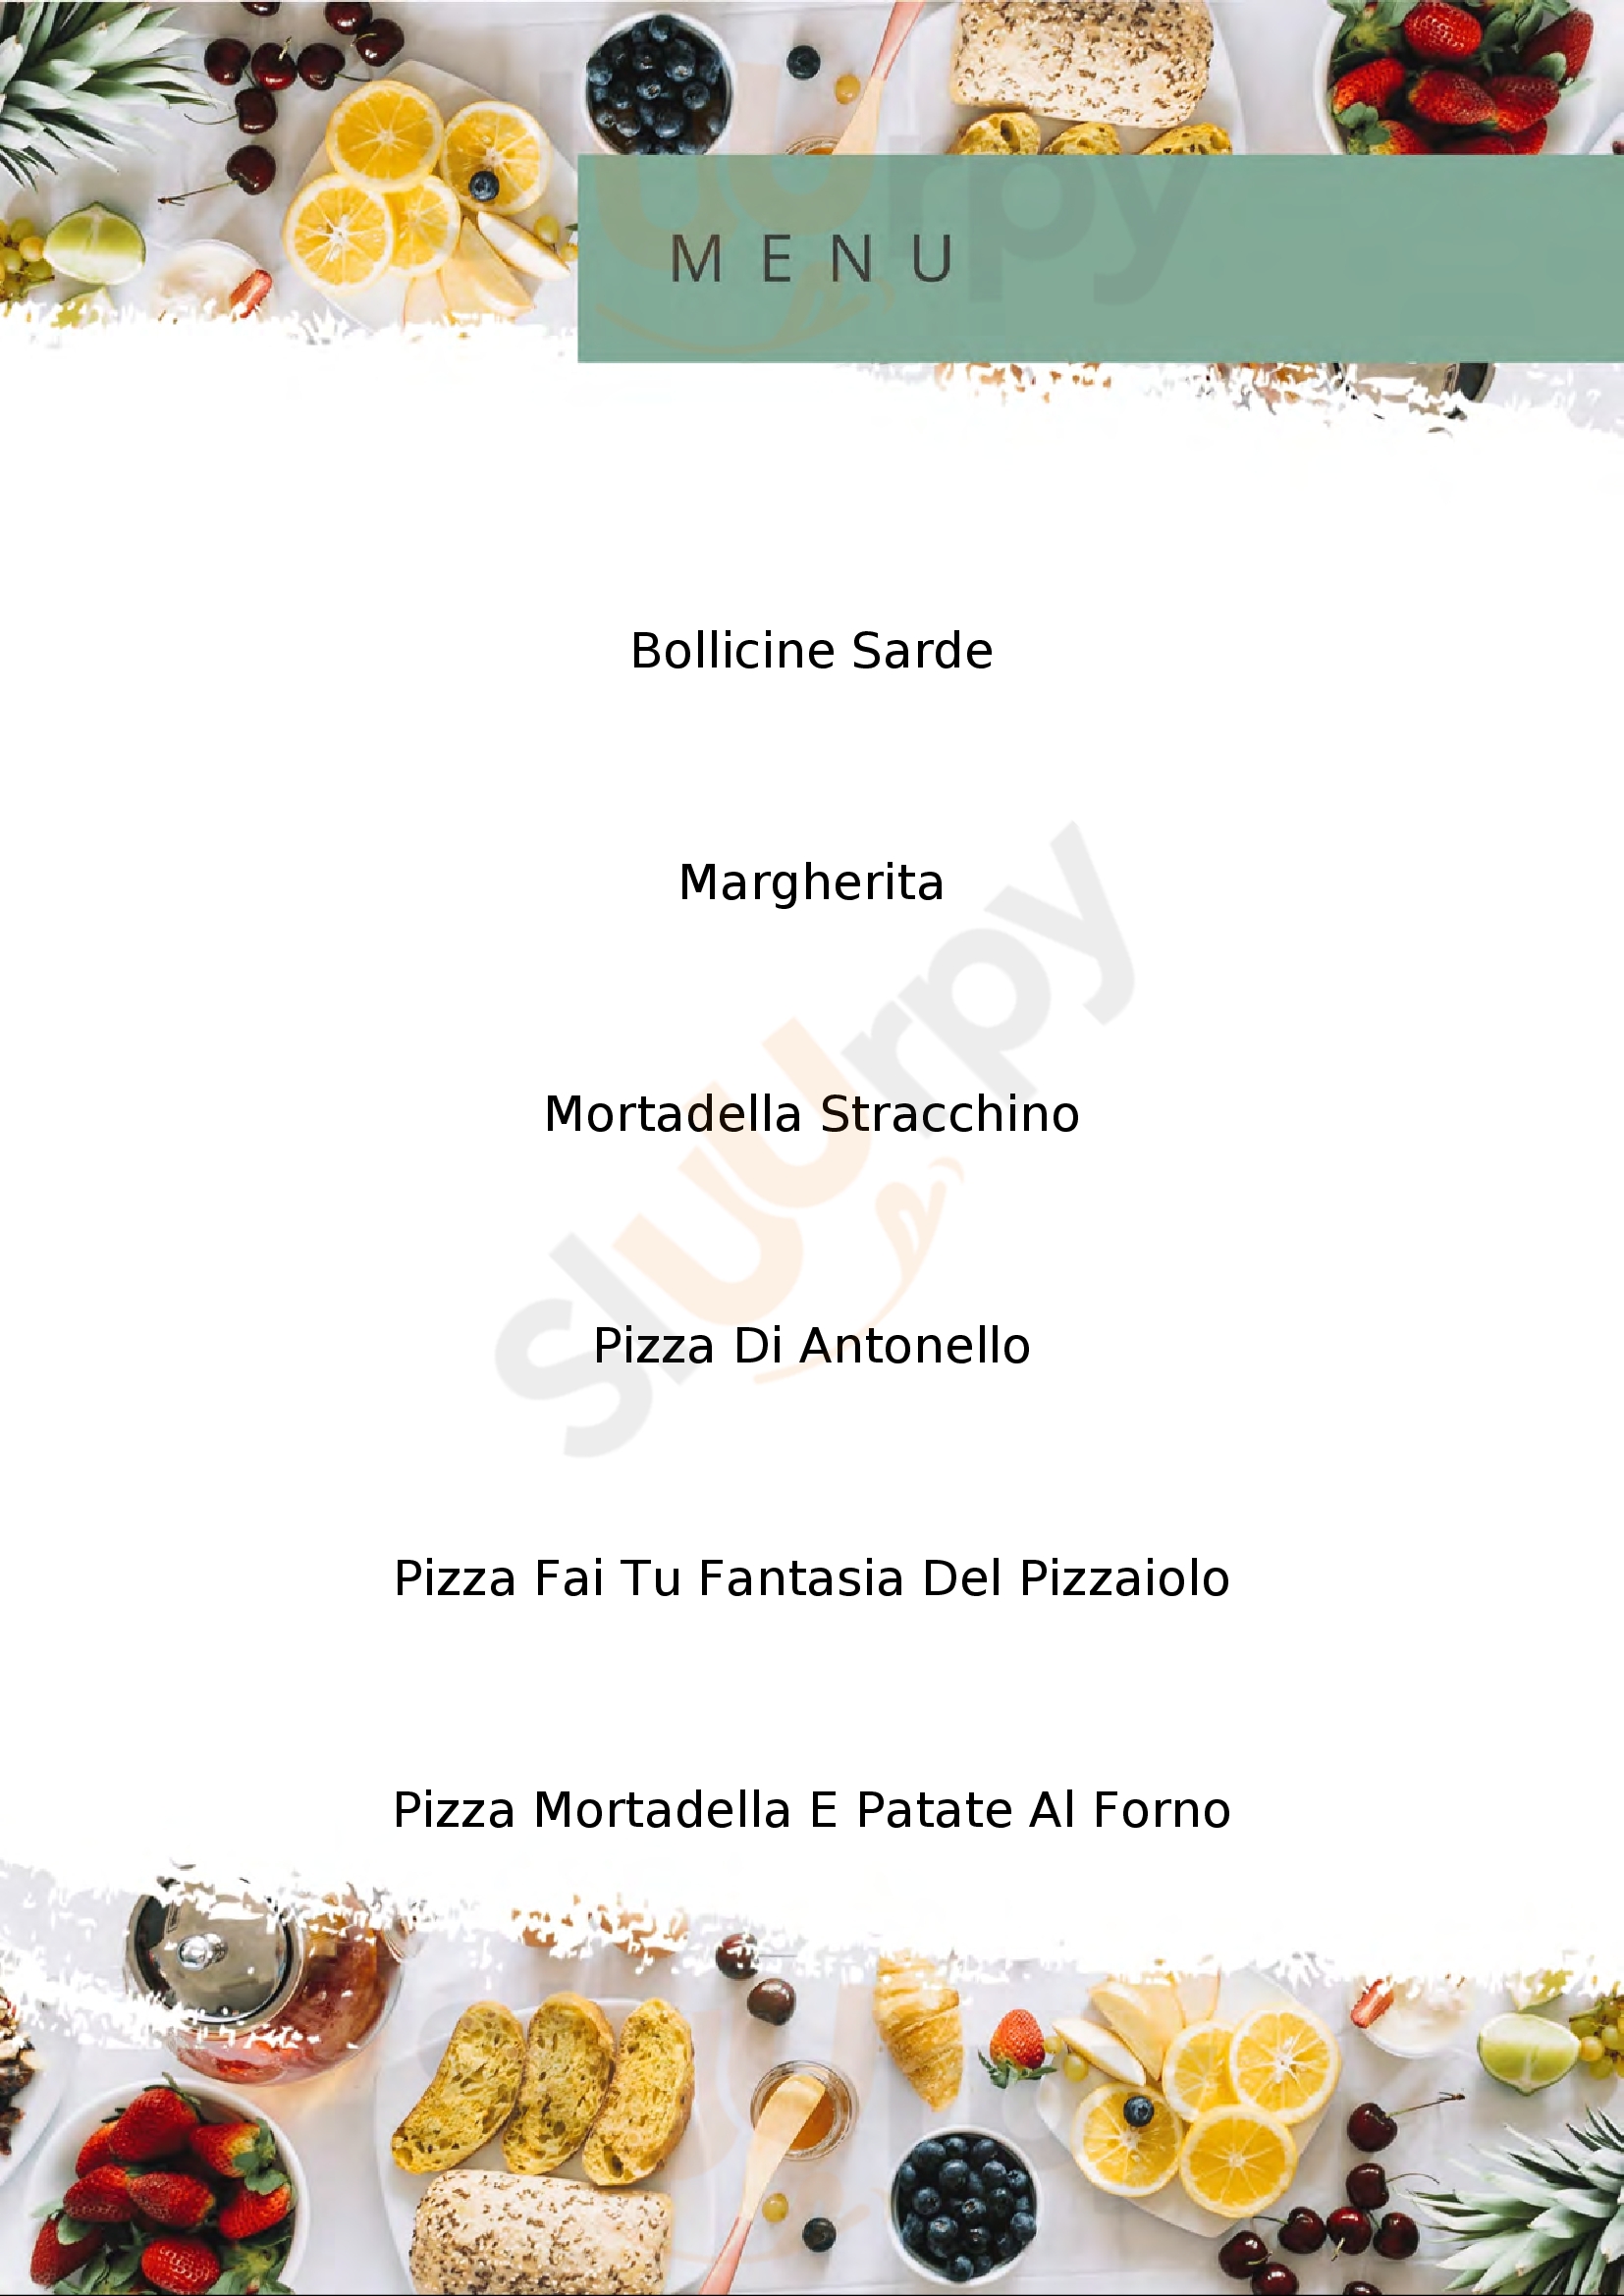 Pizzeria d'asporto Ciky Budoni menù 1 pagina